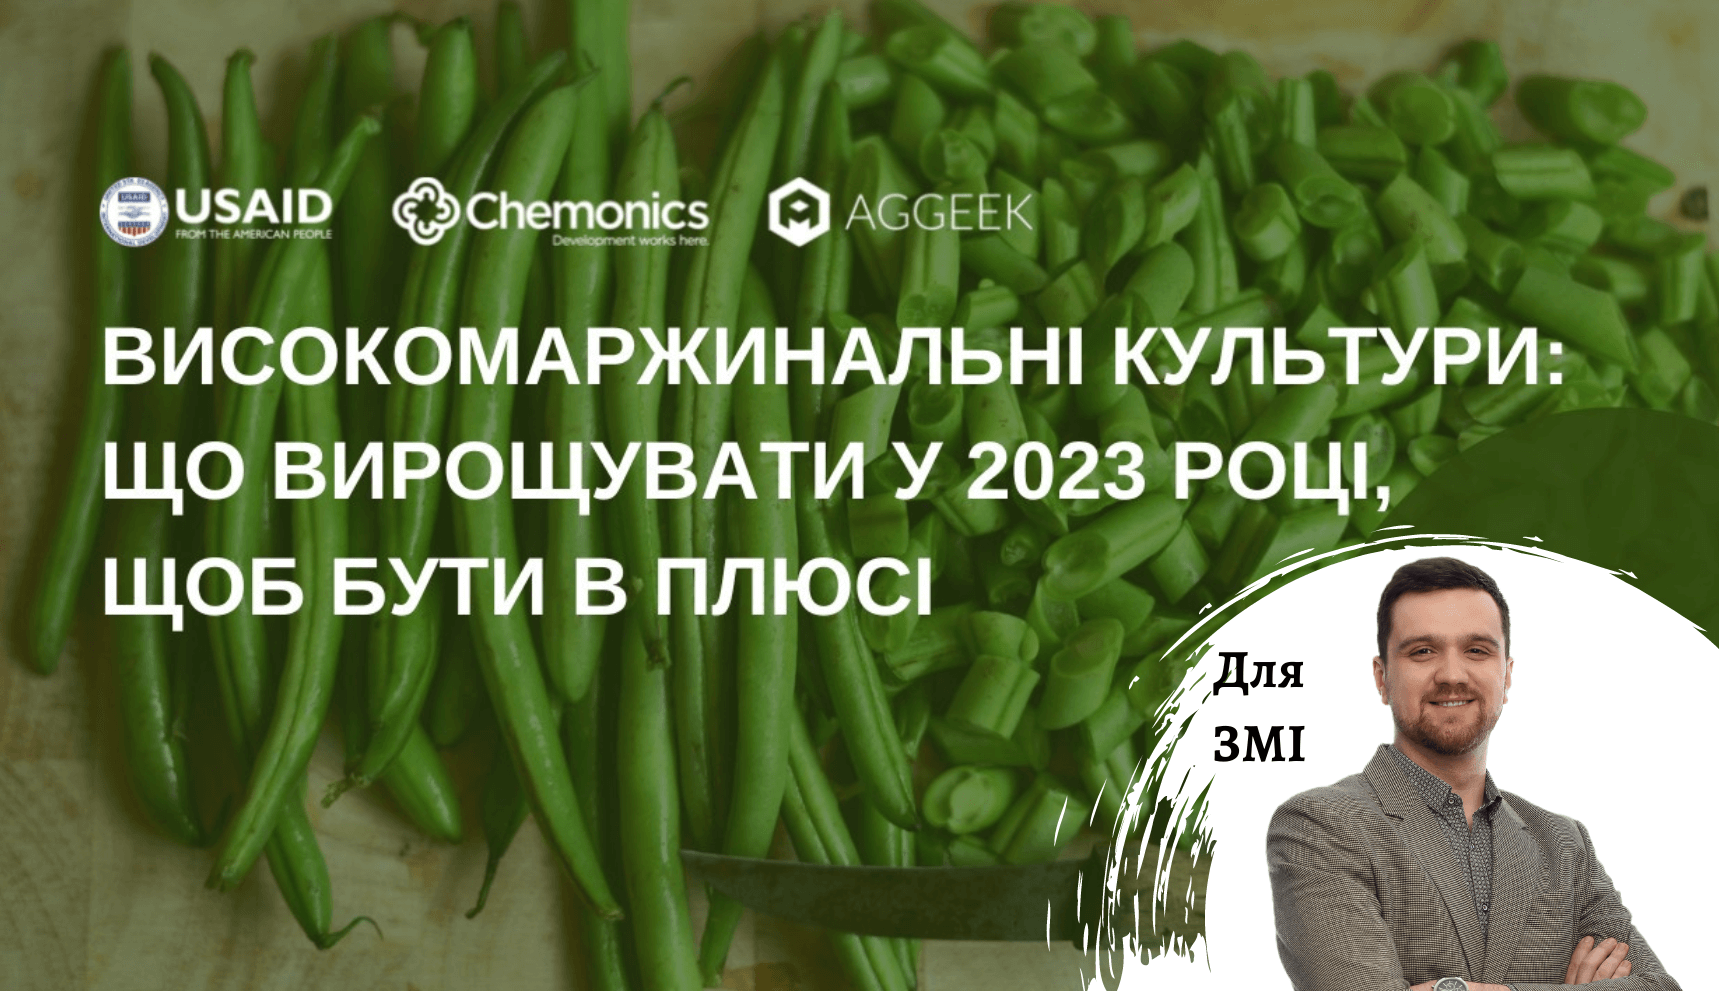 С обзором трендов рынков овощей в Украине будет выступать старший консультант Pro-Consulting Андрей Мокряков на вебинаре Aggeek 27 декабря 2022 года